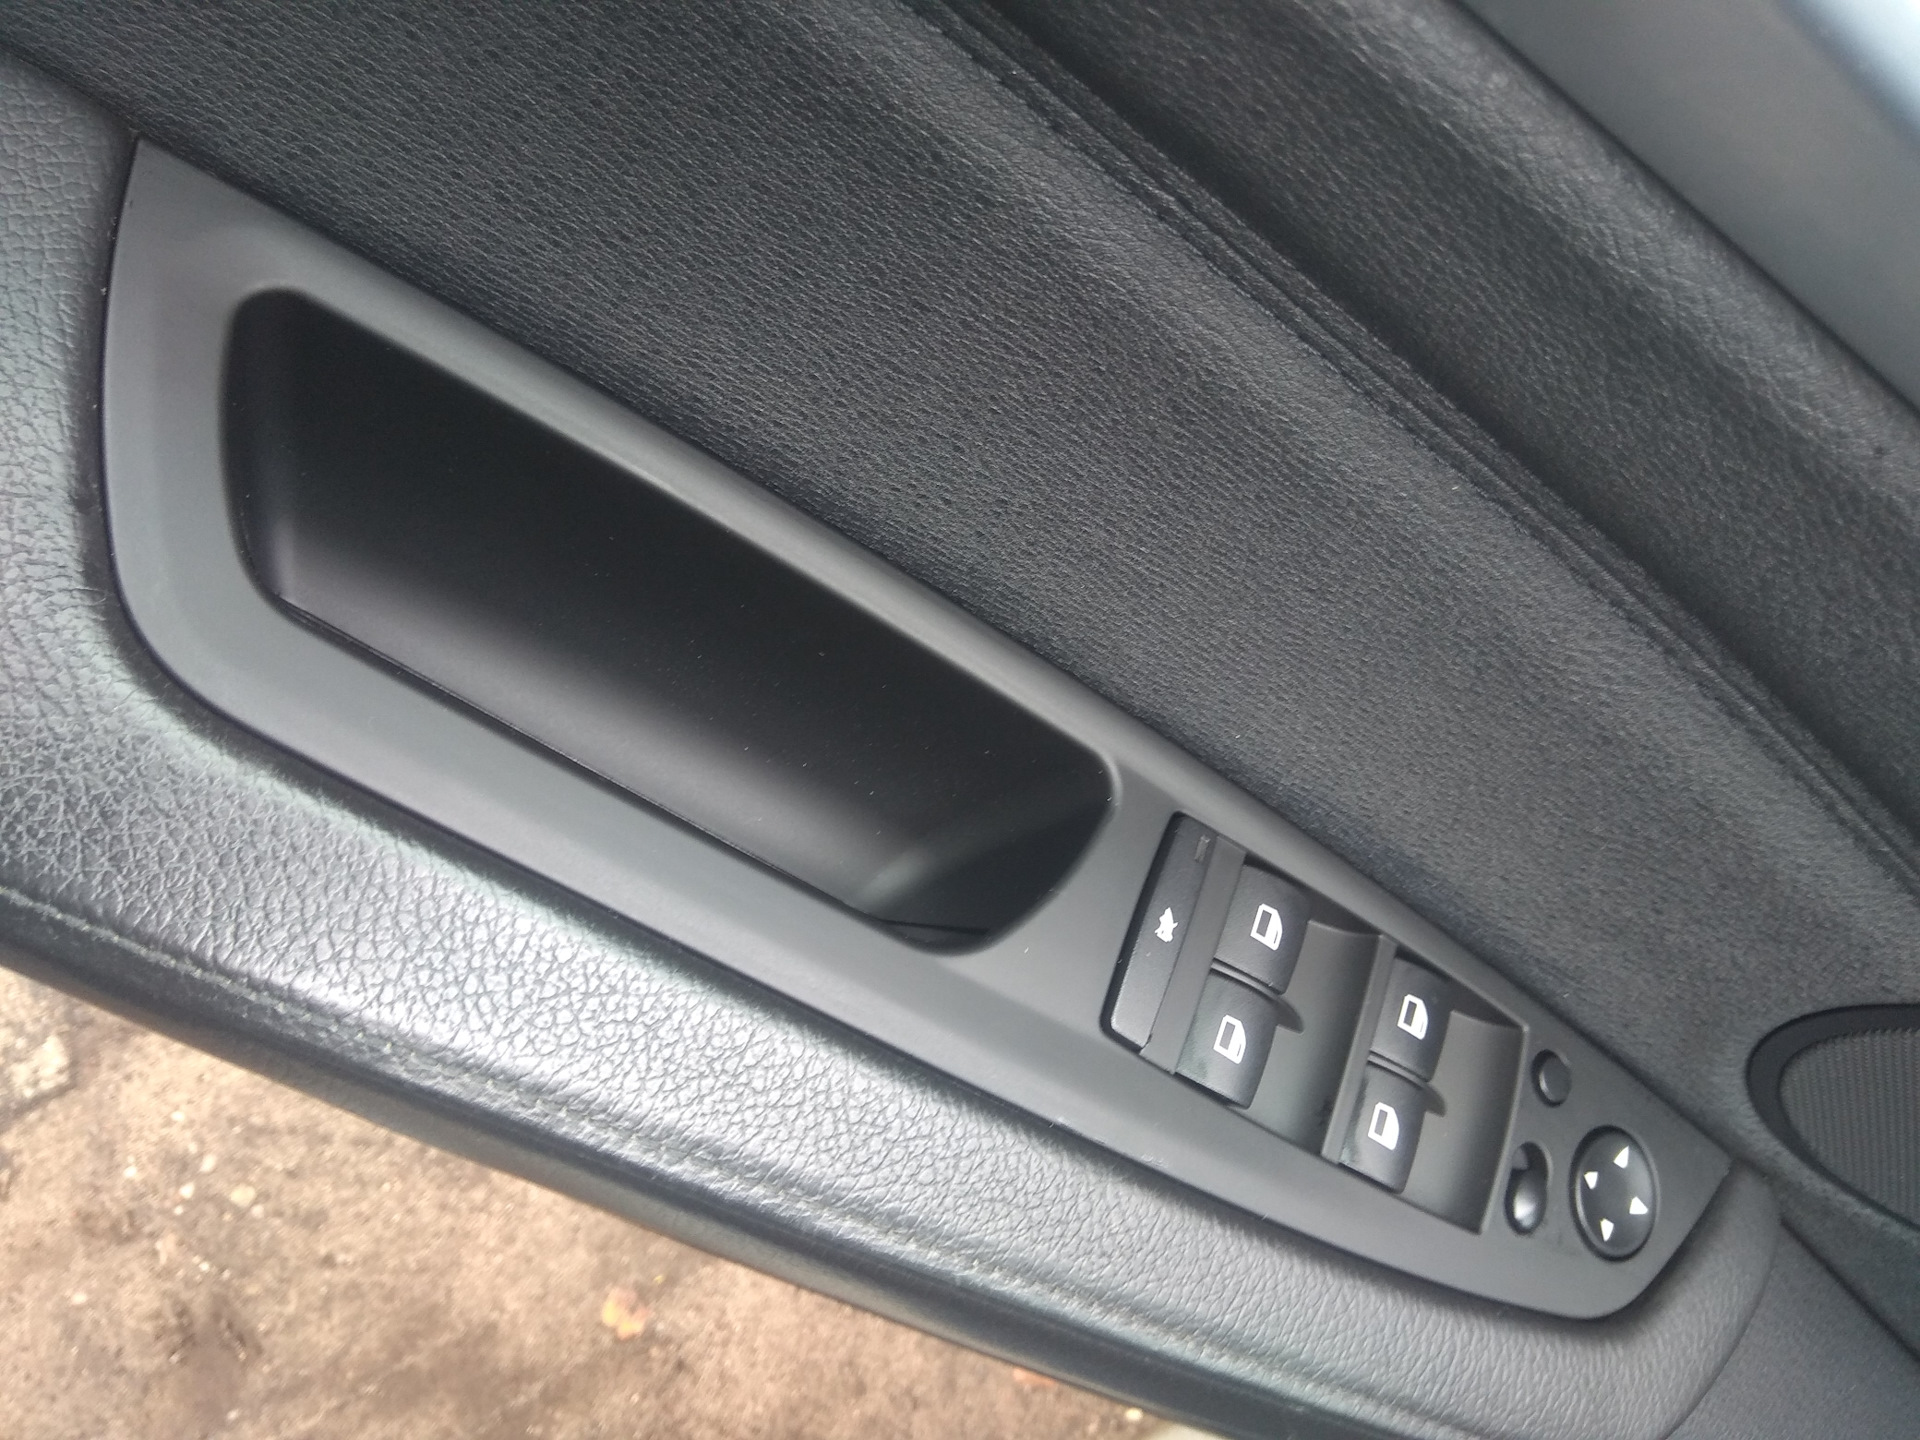 Накладка на водительскую дверь. E60 кнопки стеклоподъемника. Колодка кнопки стеклоподъемника Peugeot 306. Блок управления стеклоподъемниками водительской двери GMC Envoy 2. Фокус 2 наклакистеклоподъемники.